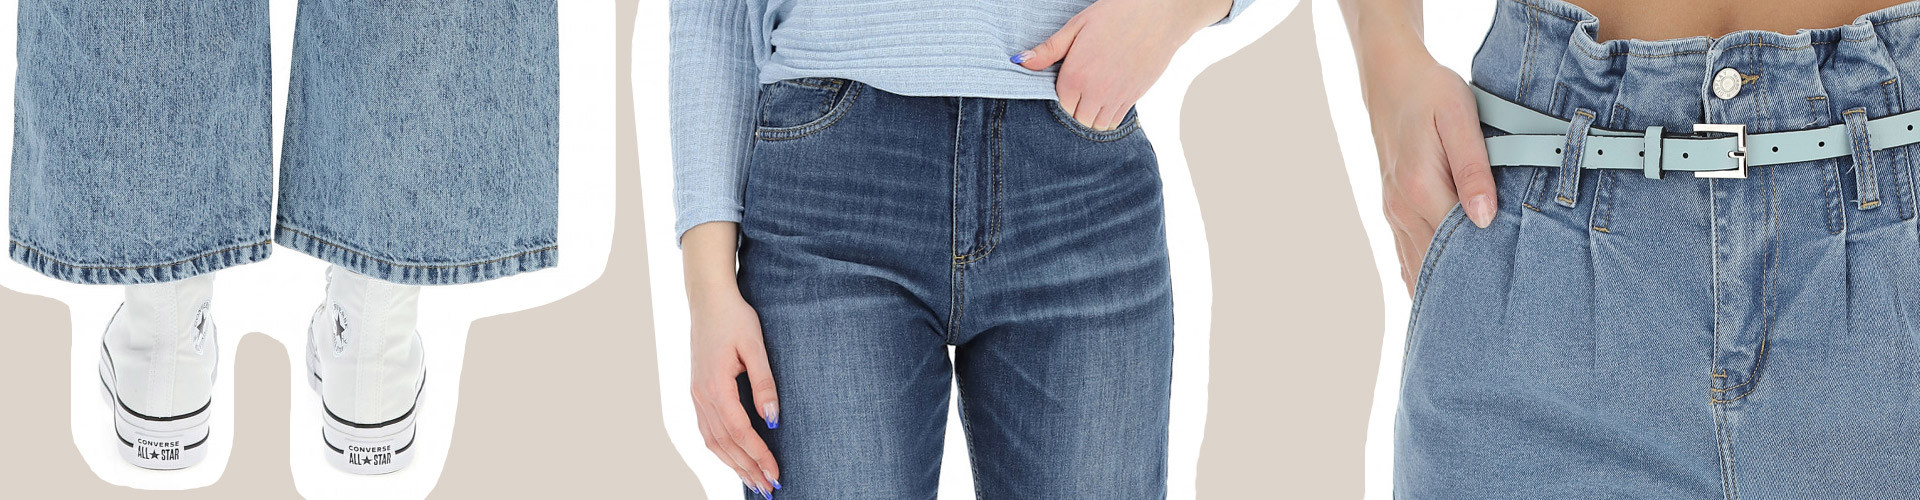 Quali-jeans-acquistare-per-il-tuo-fisico.jpg